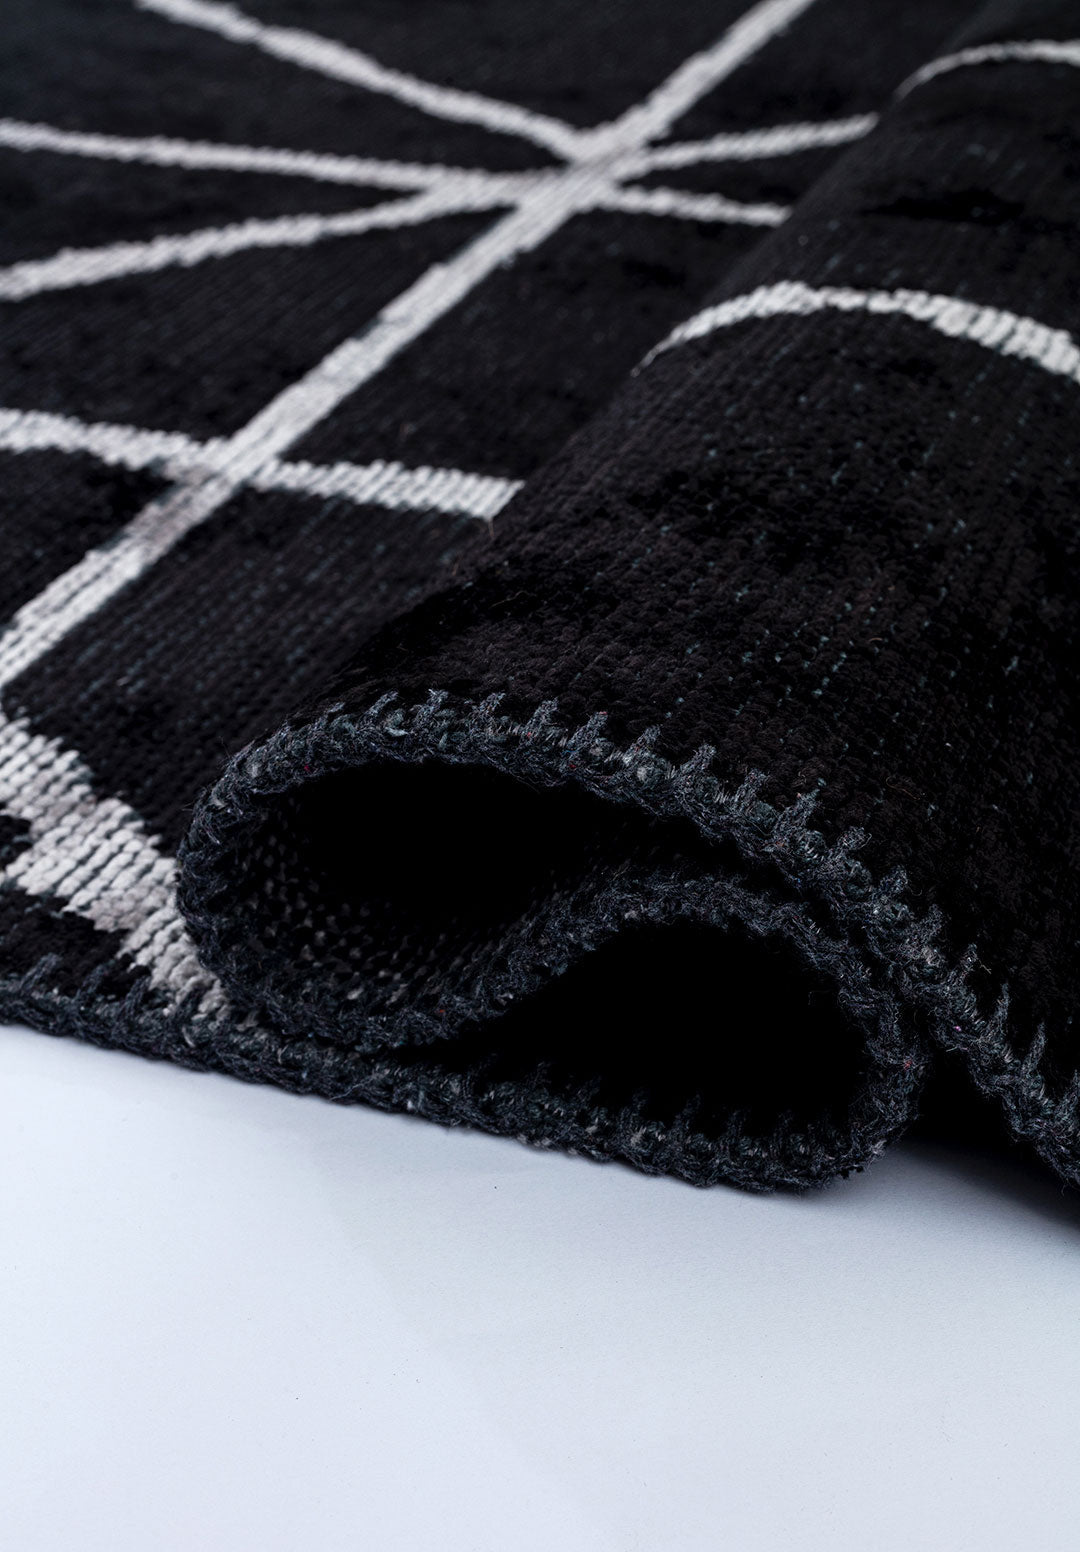 Grid Black - Light Grey Rug Rugs - Venetto Design Venettodesign.com